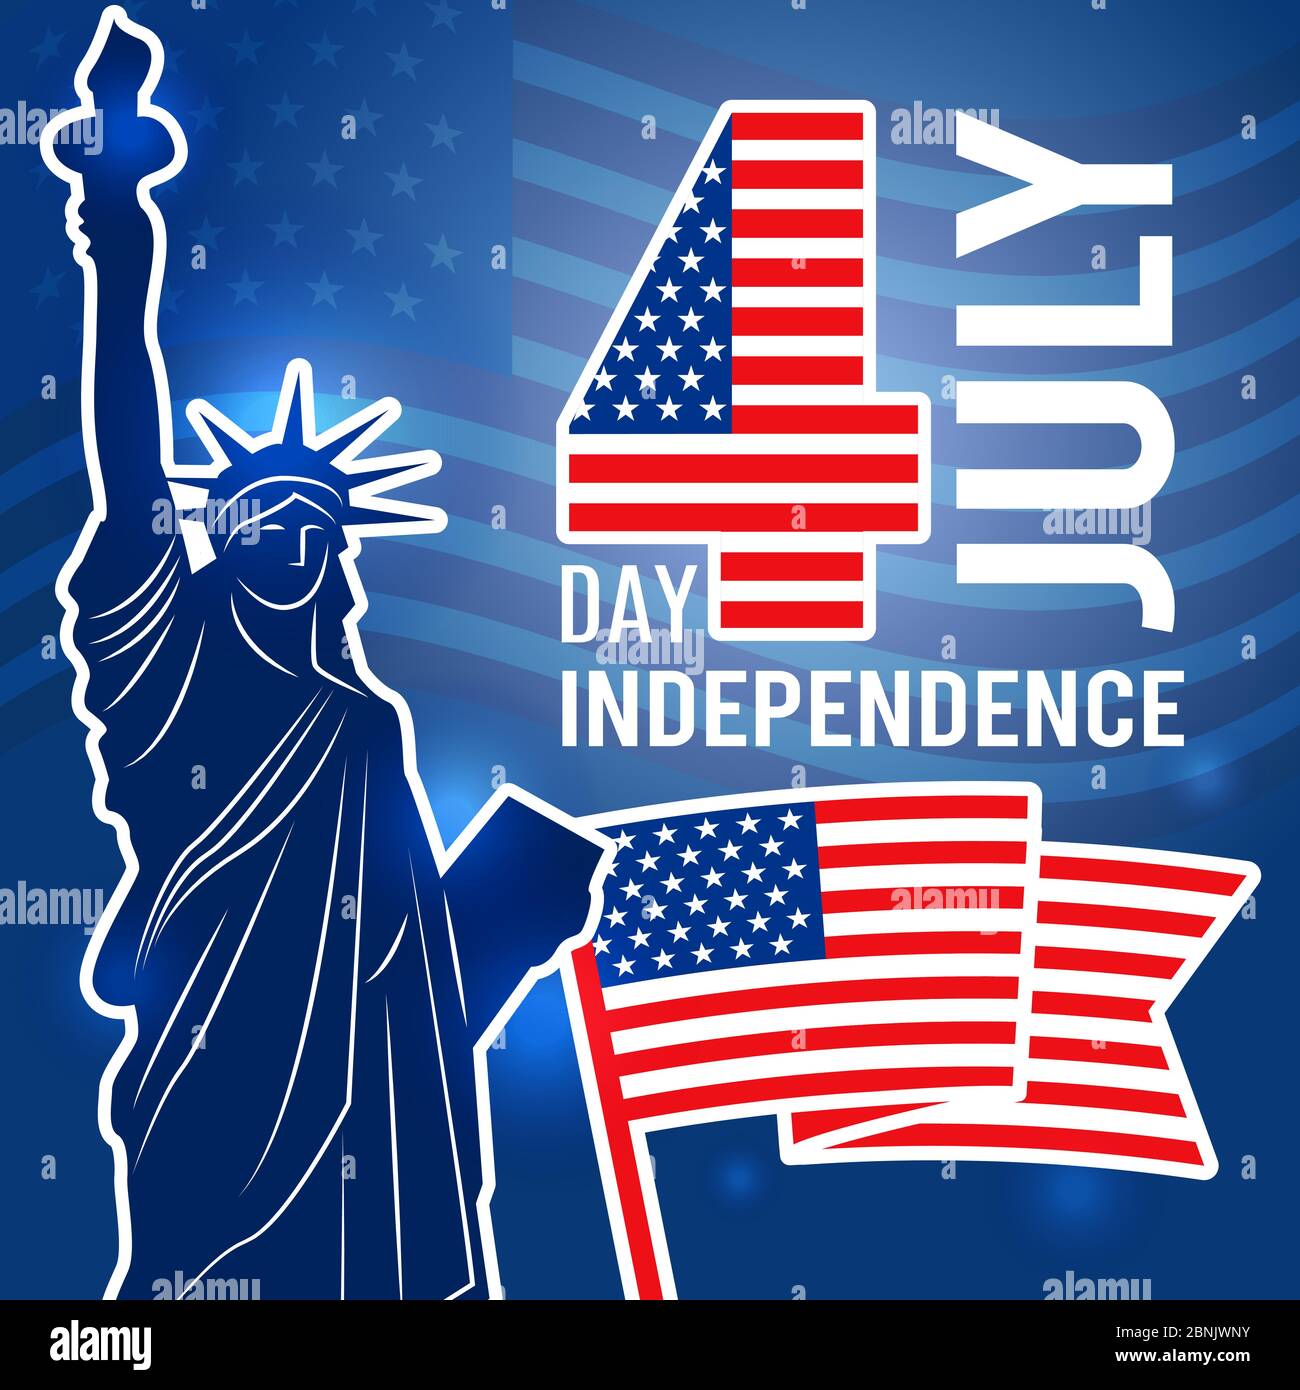 Plakat zum Unabhängigkeitstag am 4. juli. Designvorlage mit Statue of Freedom USA Plakette mit Platz für Ihren Text Stock Vektor